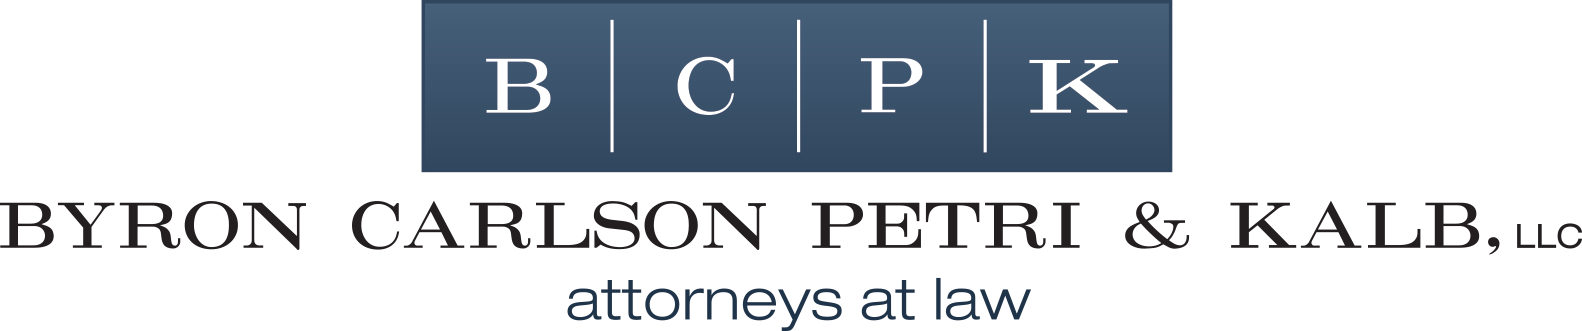 Byron Carlson Petri & Kalb, LLC | attorneys at law